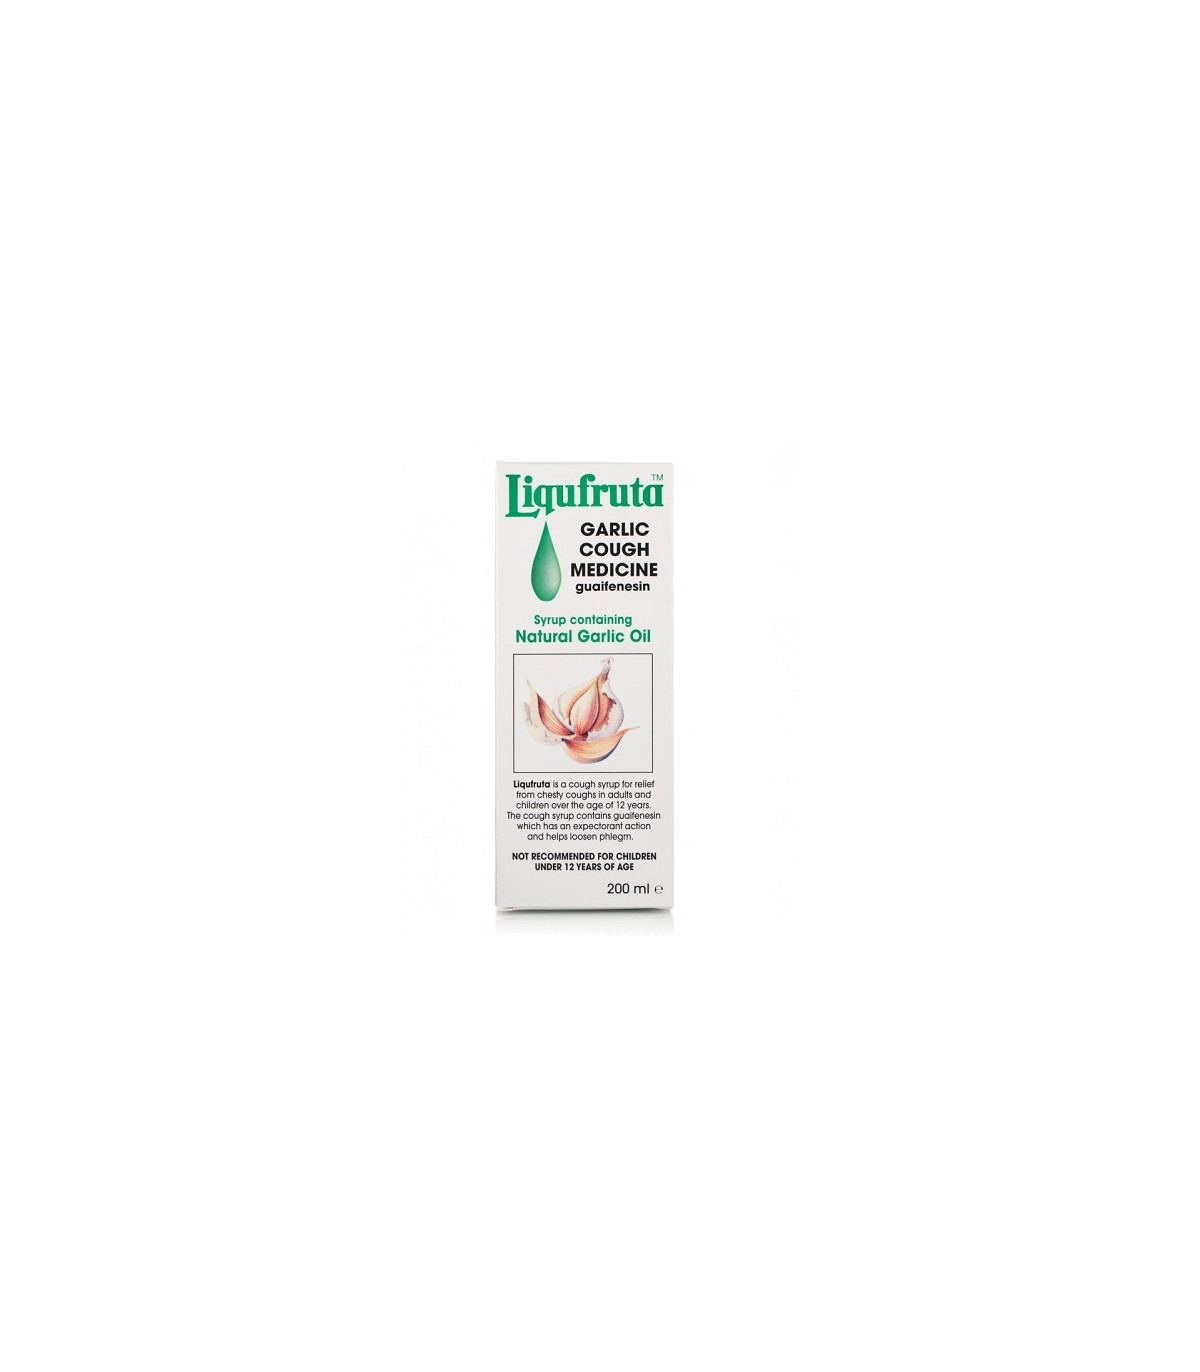 Liquifruta Garlic Cough Medicine - 200ml